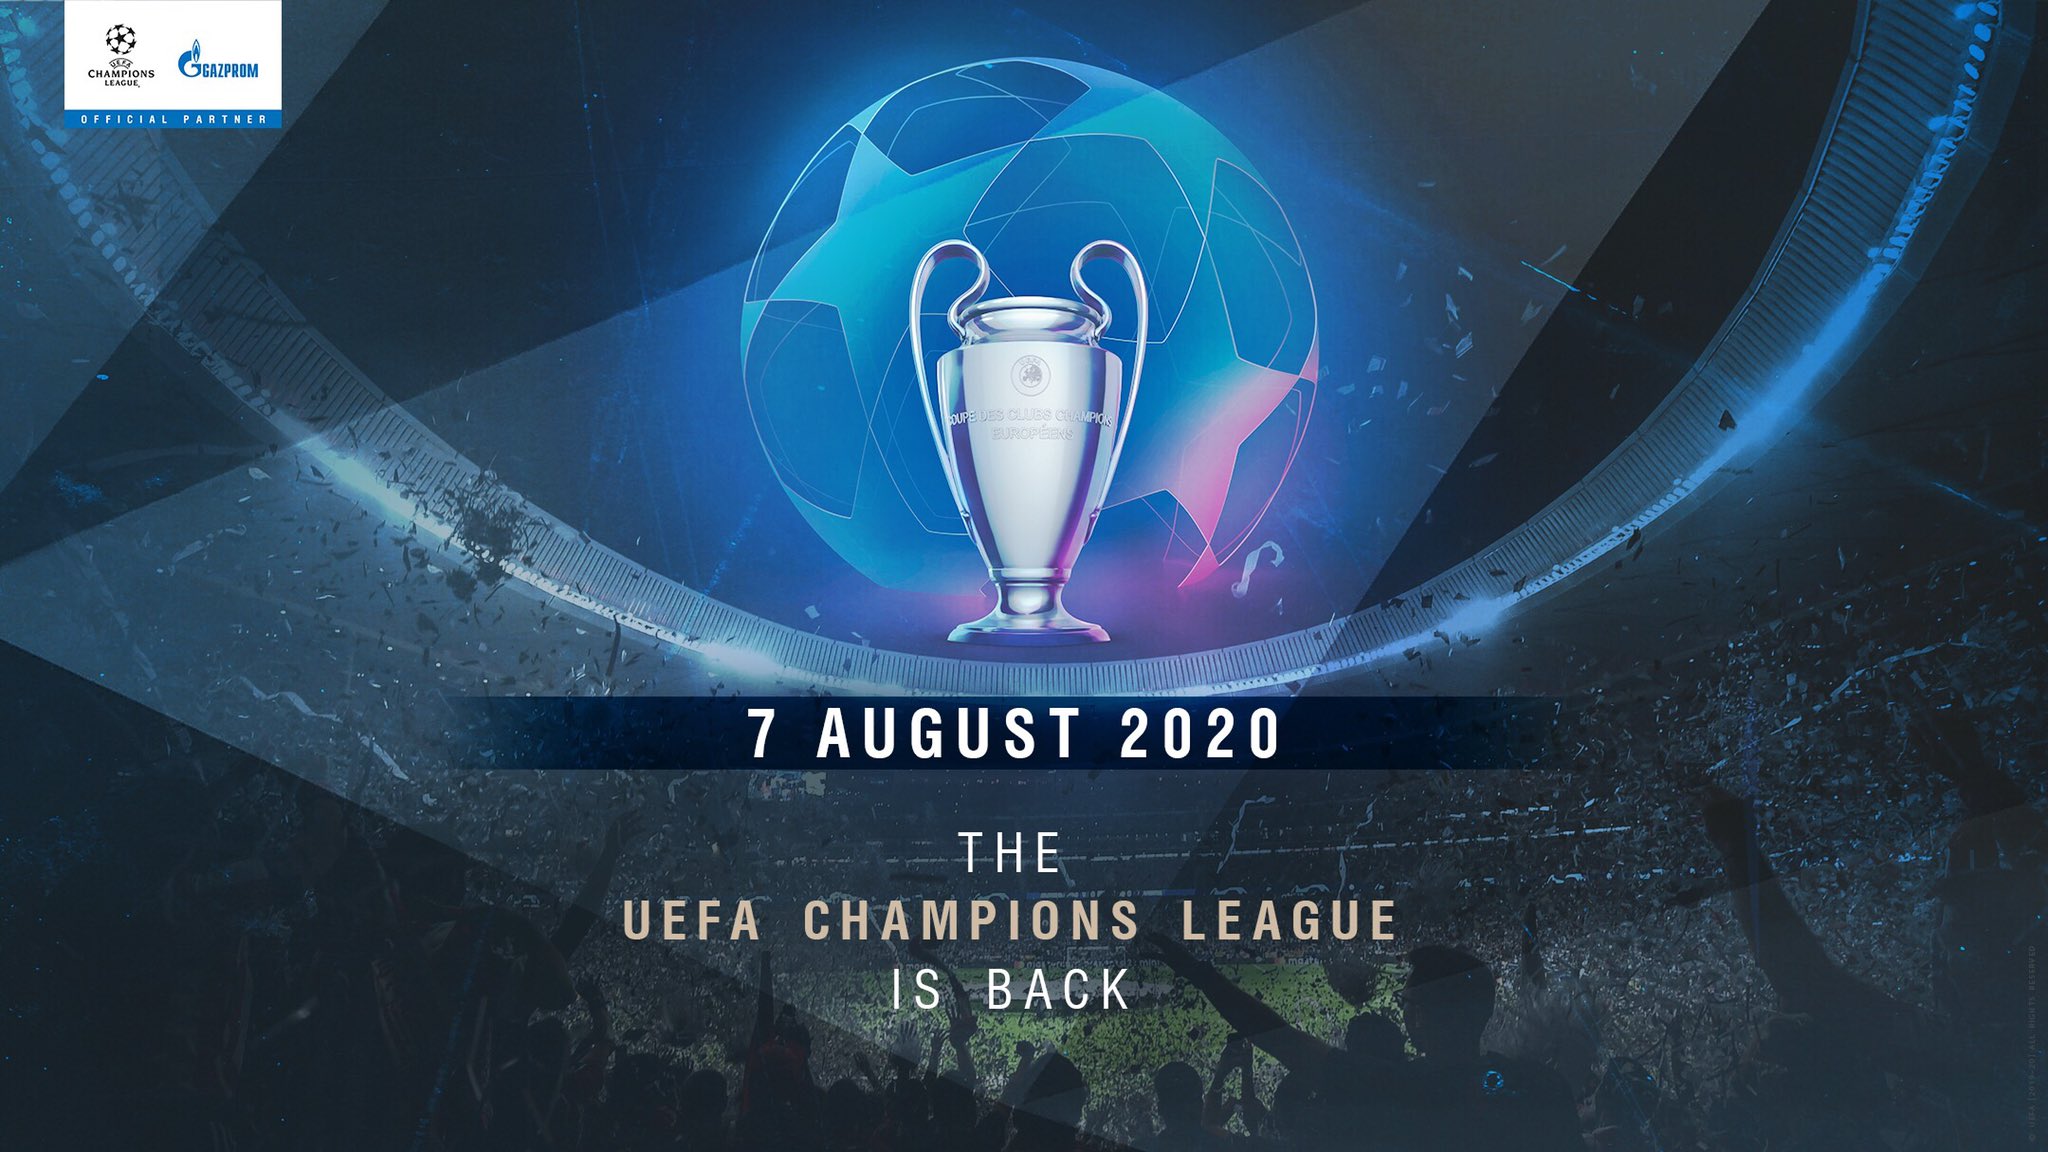 er der Optøjer præst L'UEFA détaille le retour de la Champions League 2019-2020 cet été avec un  "Final 8" à Lisbonne - SportBuzzBusiness.fr